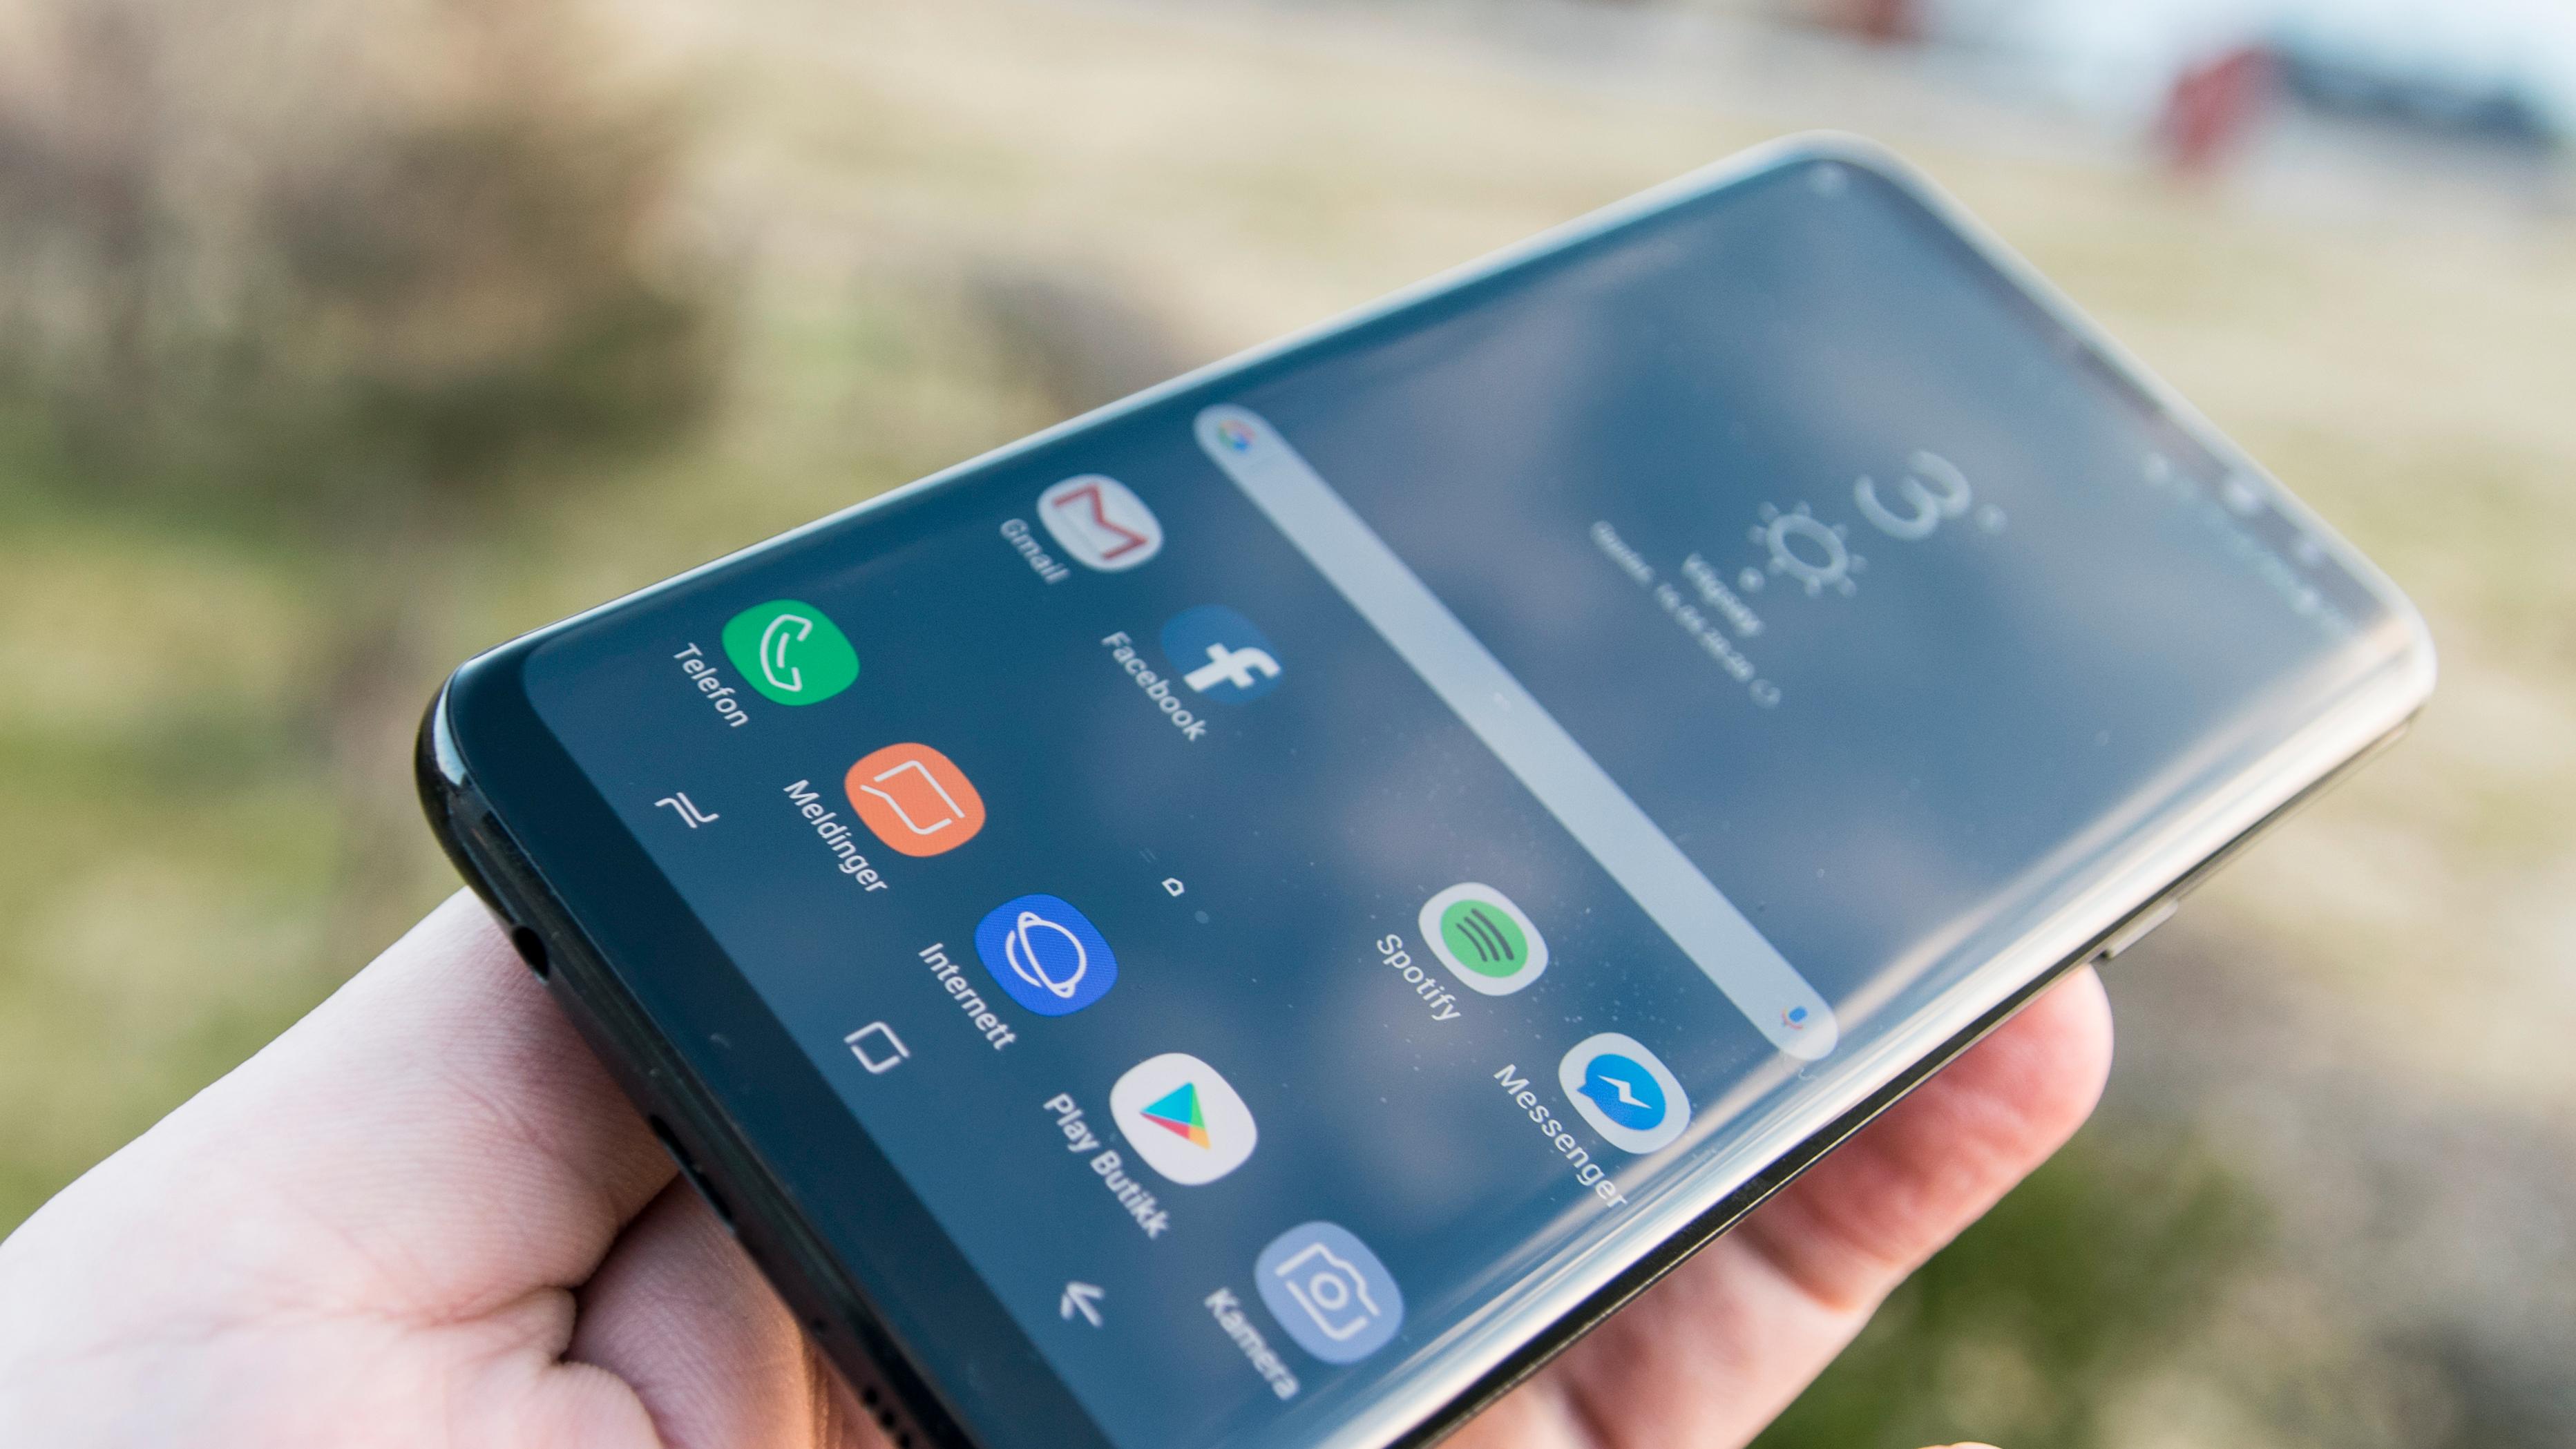 Galaxy S8-eiere får fordeler takket være et nytt samarbeid mellom Google og Samsung.